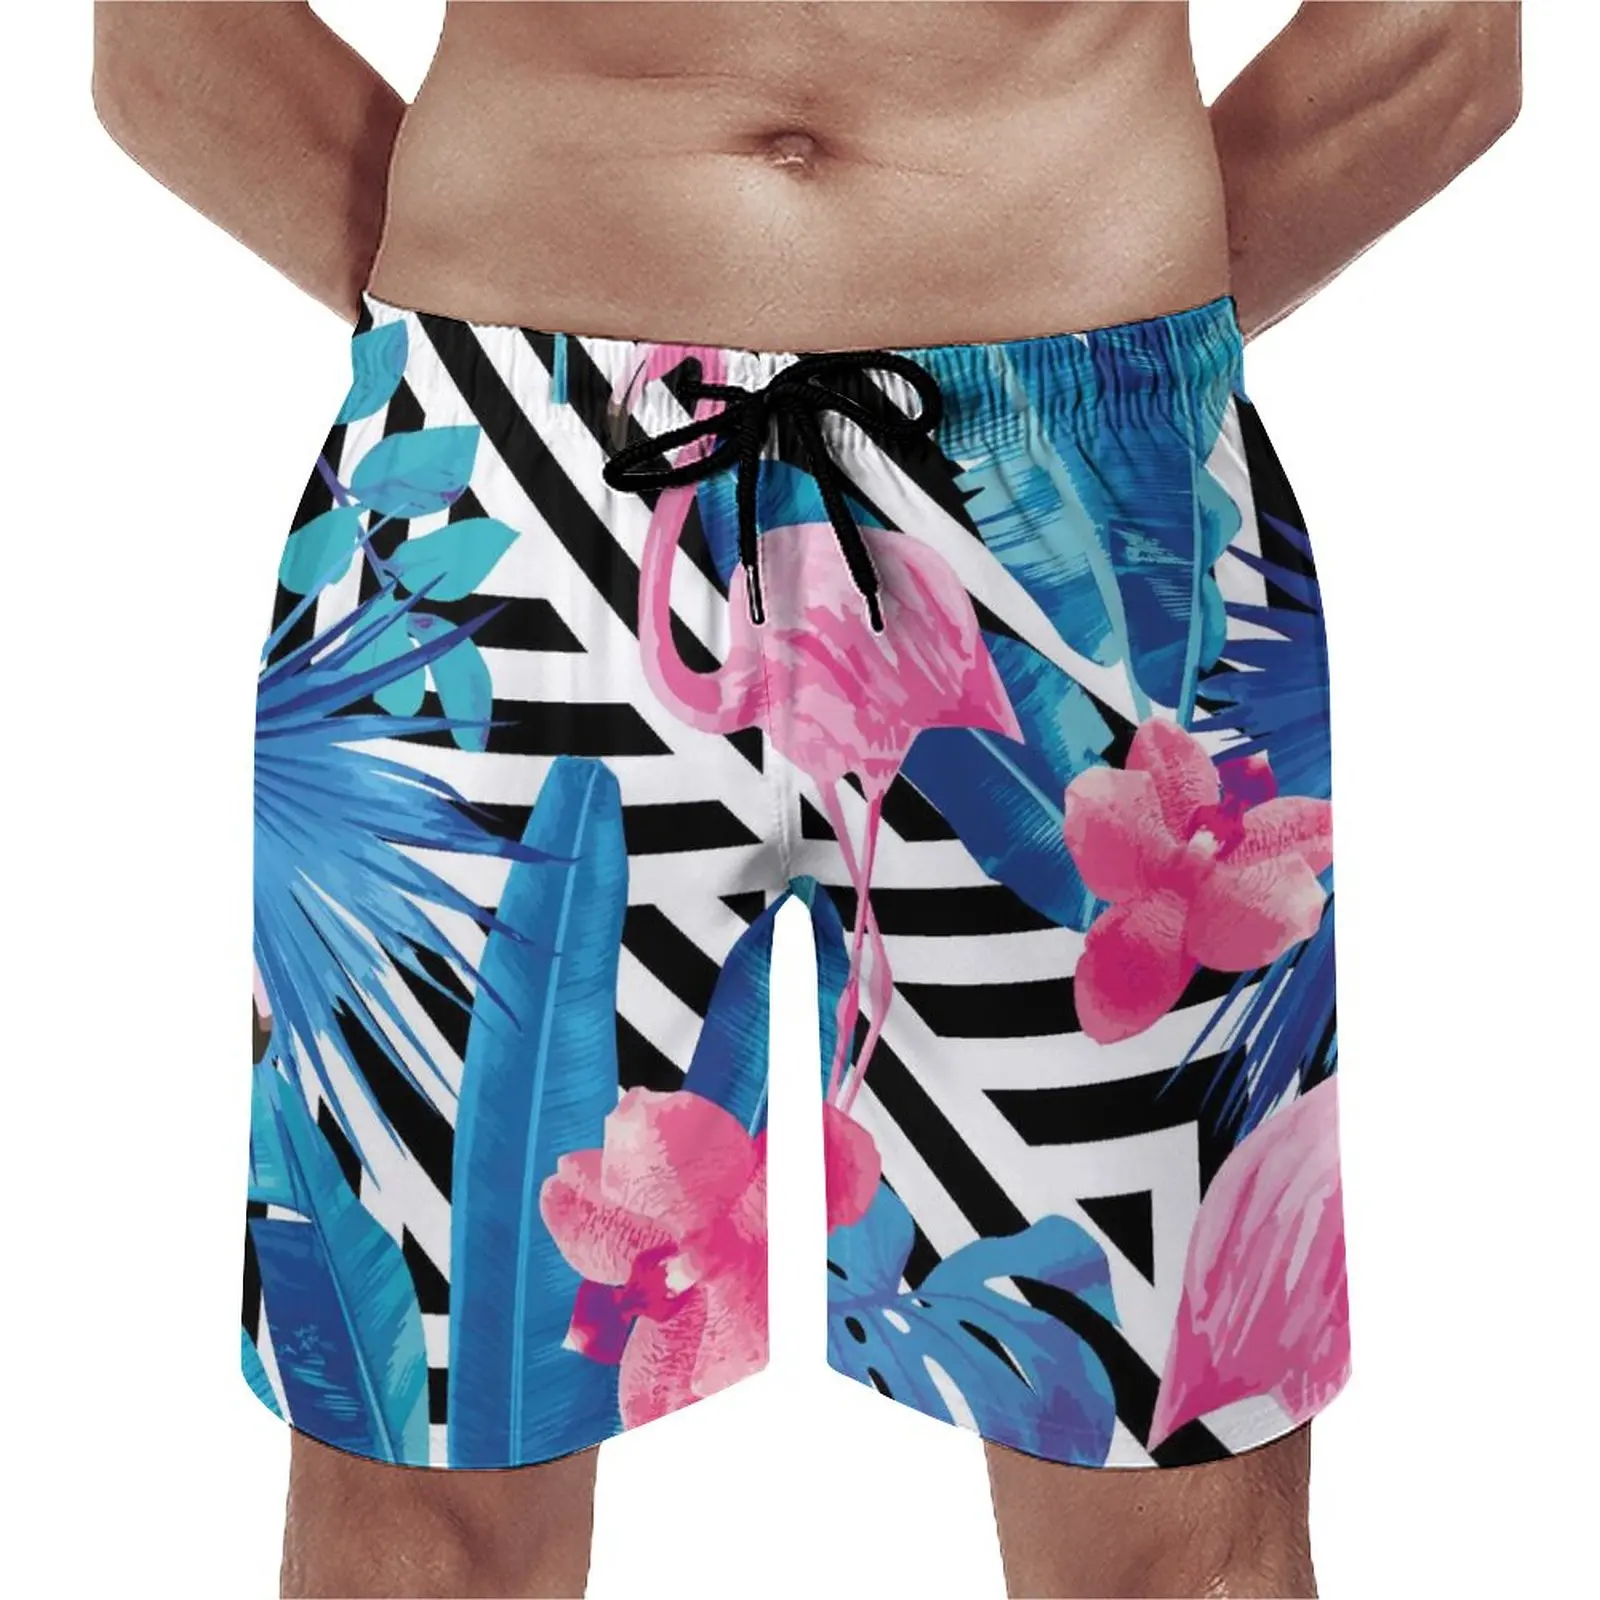 

Шорты для спортзала с принтом фламинго, летние классические пляжные короткие штаны в полоску с принтом листьев, удобные спортивные плавки для серфинга на заказ